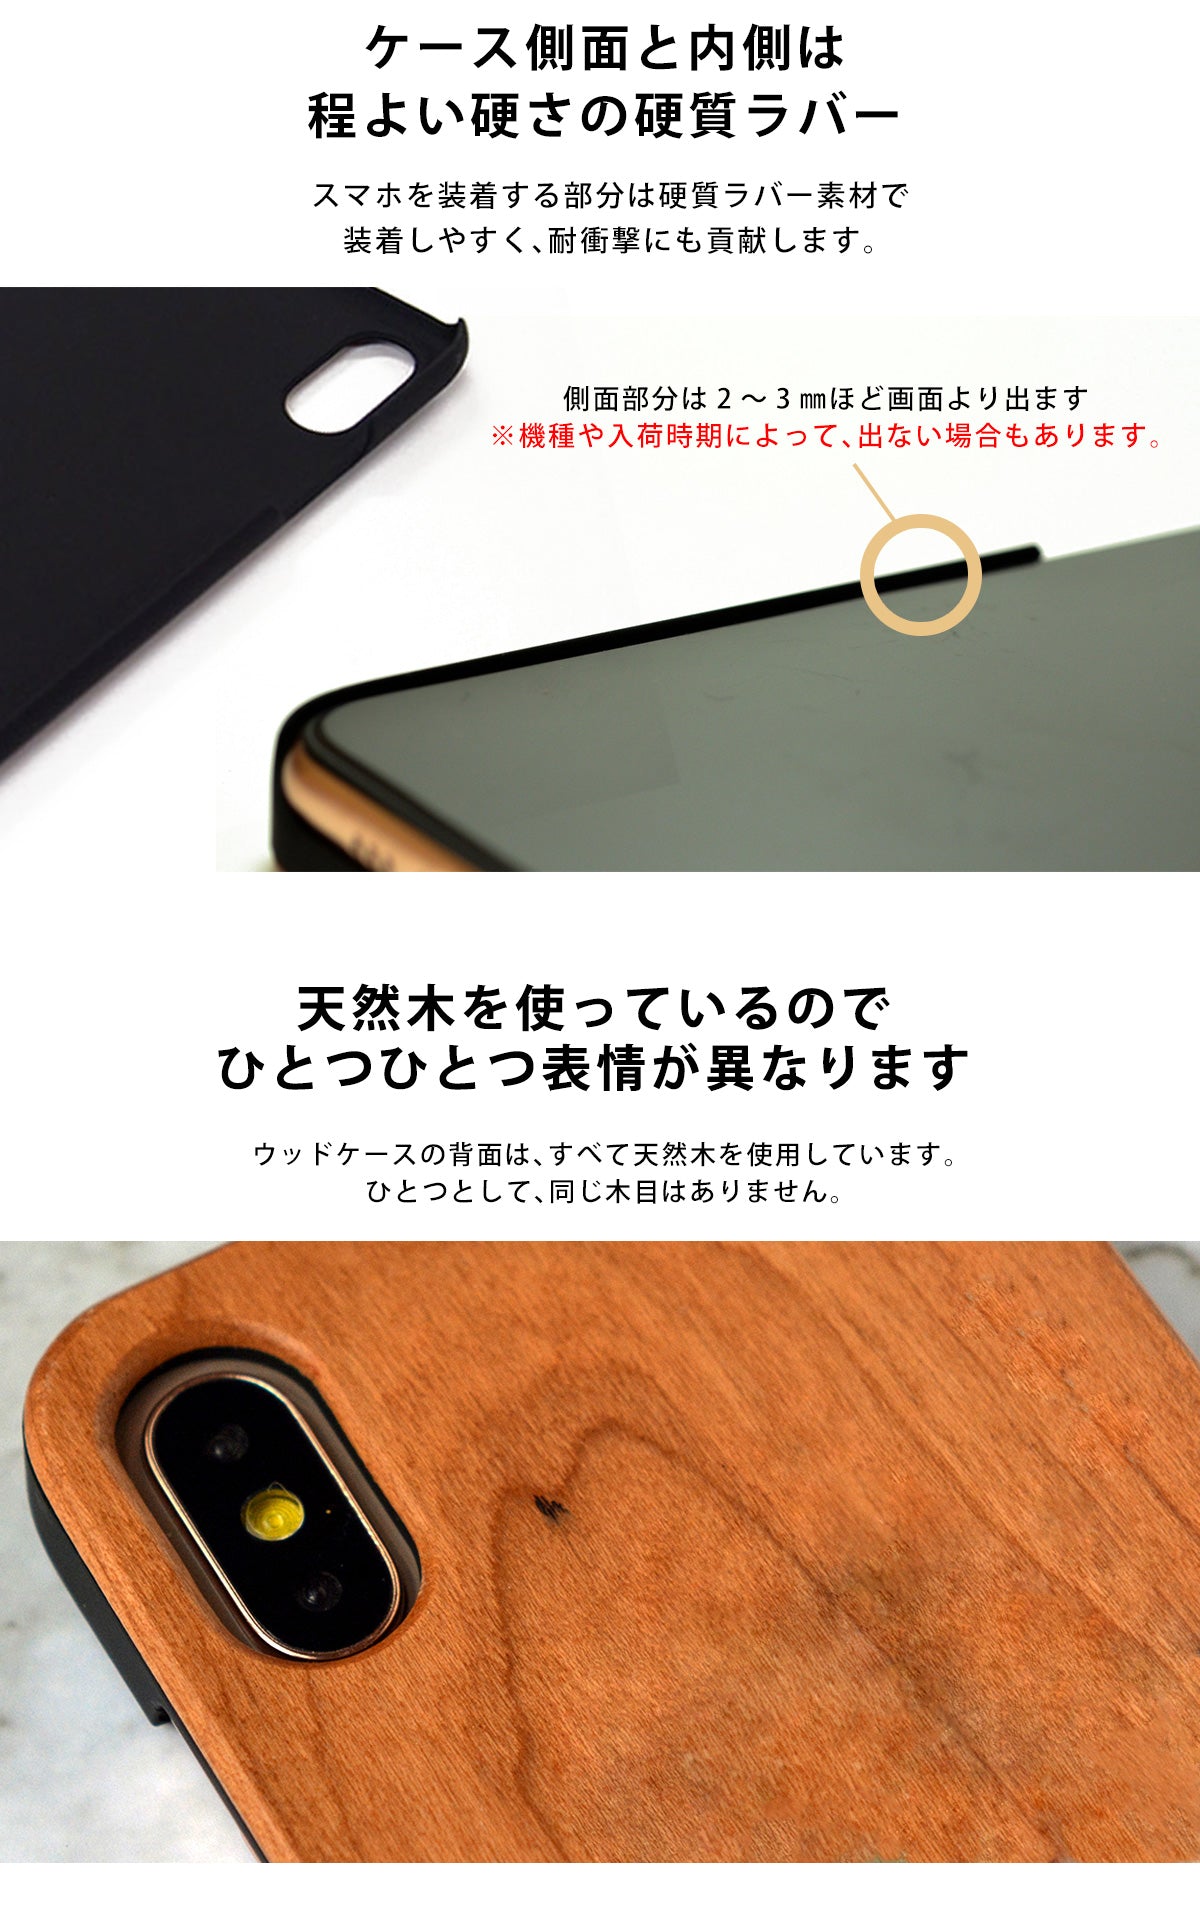 ウッド 木製 竹製 天然木 iPhone Xperia ケース tr1510